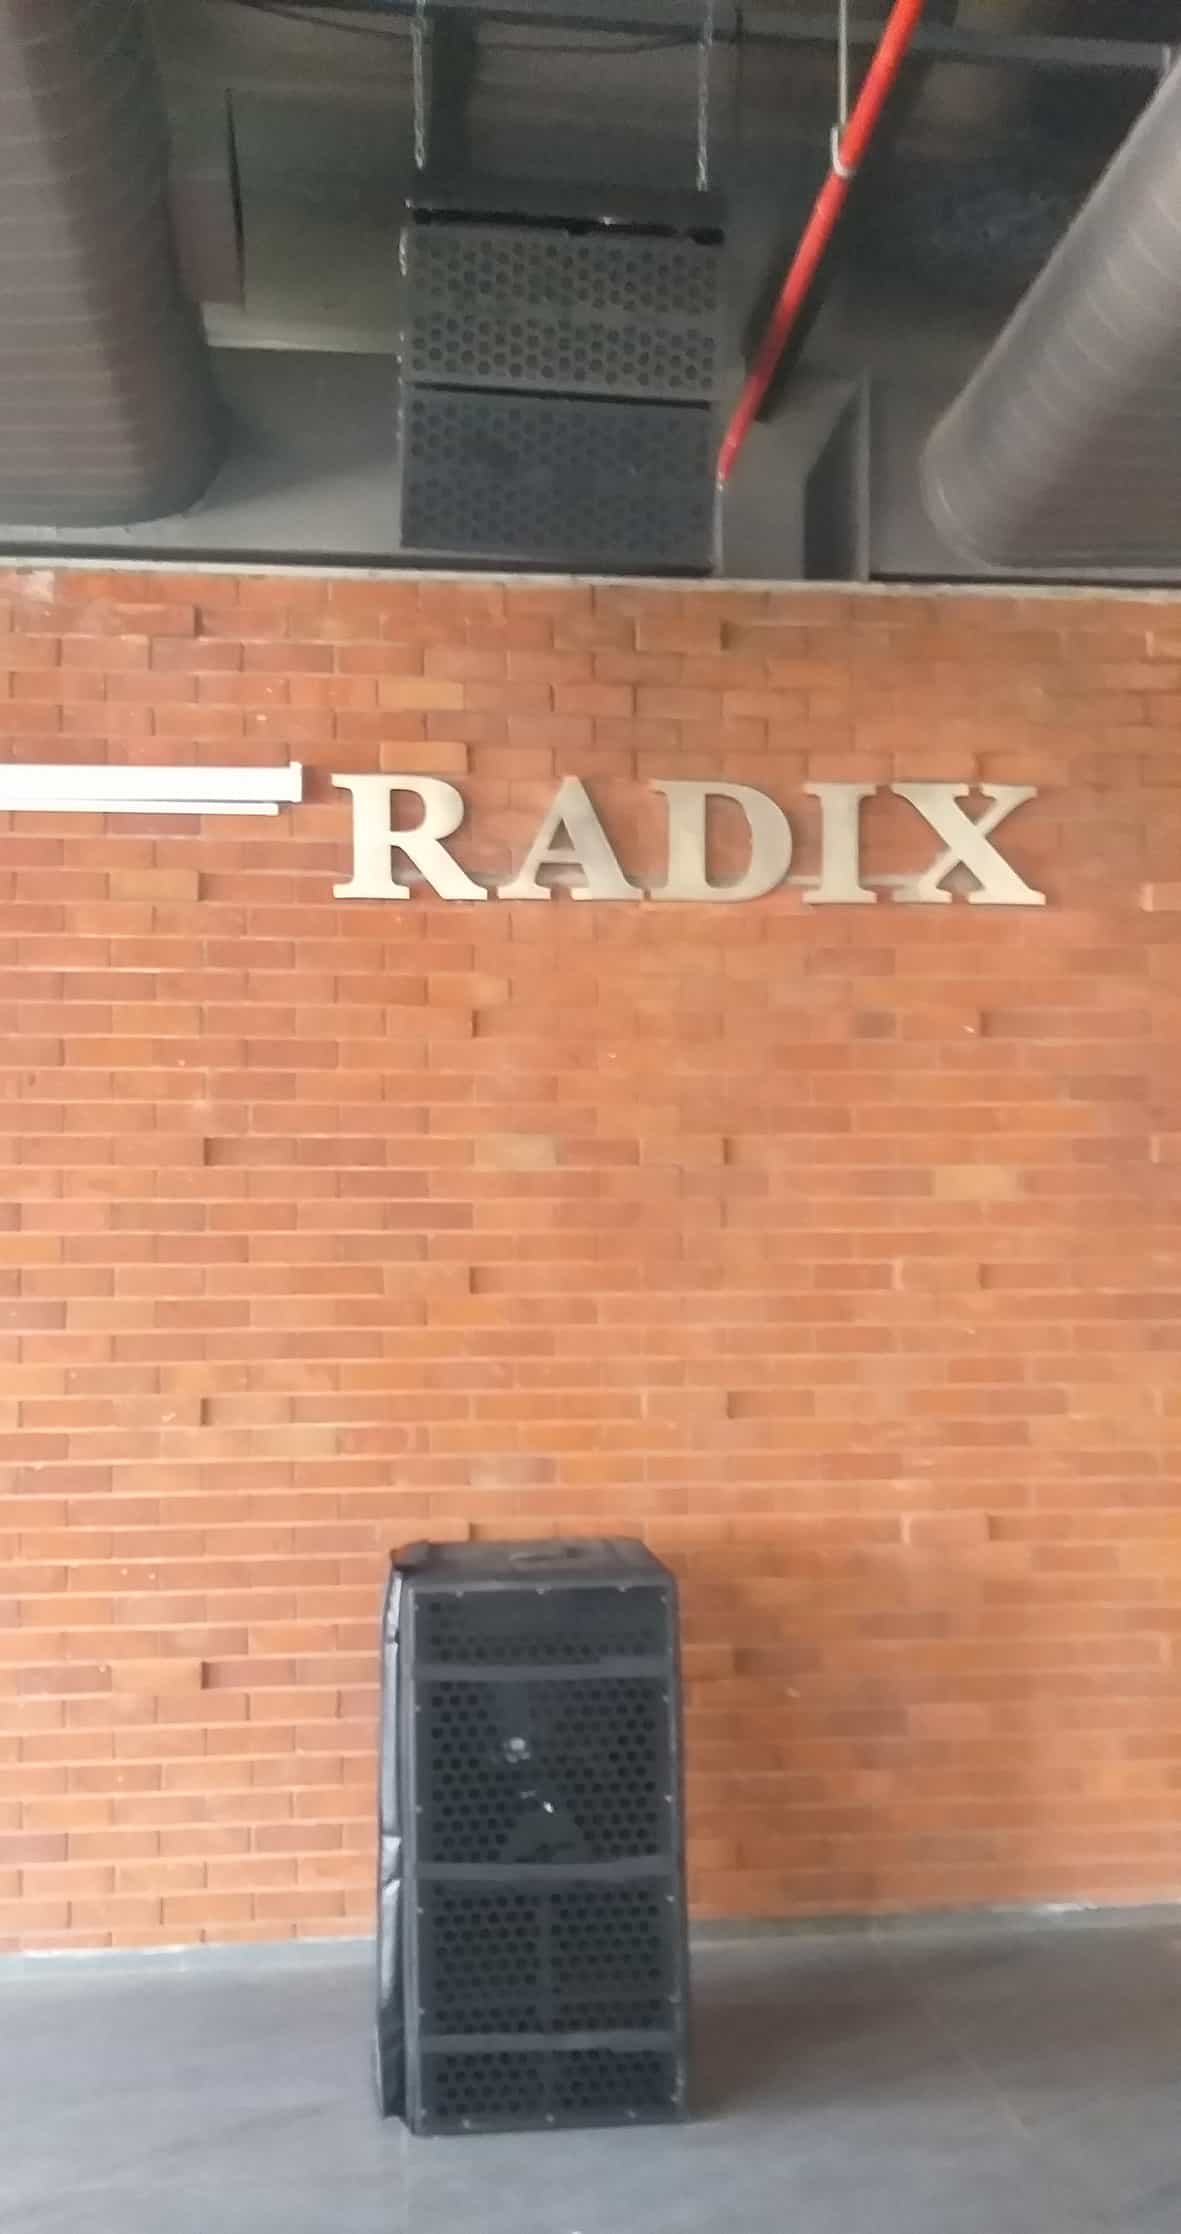 N-Labs reinforce sound at Radixweb 